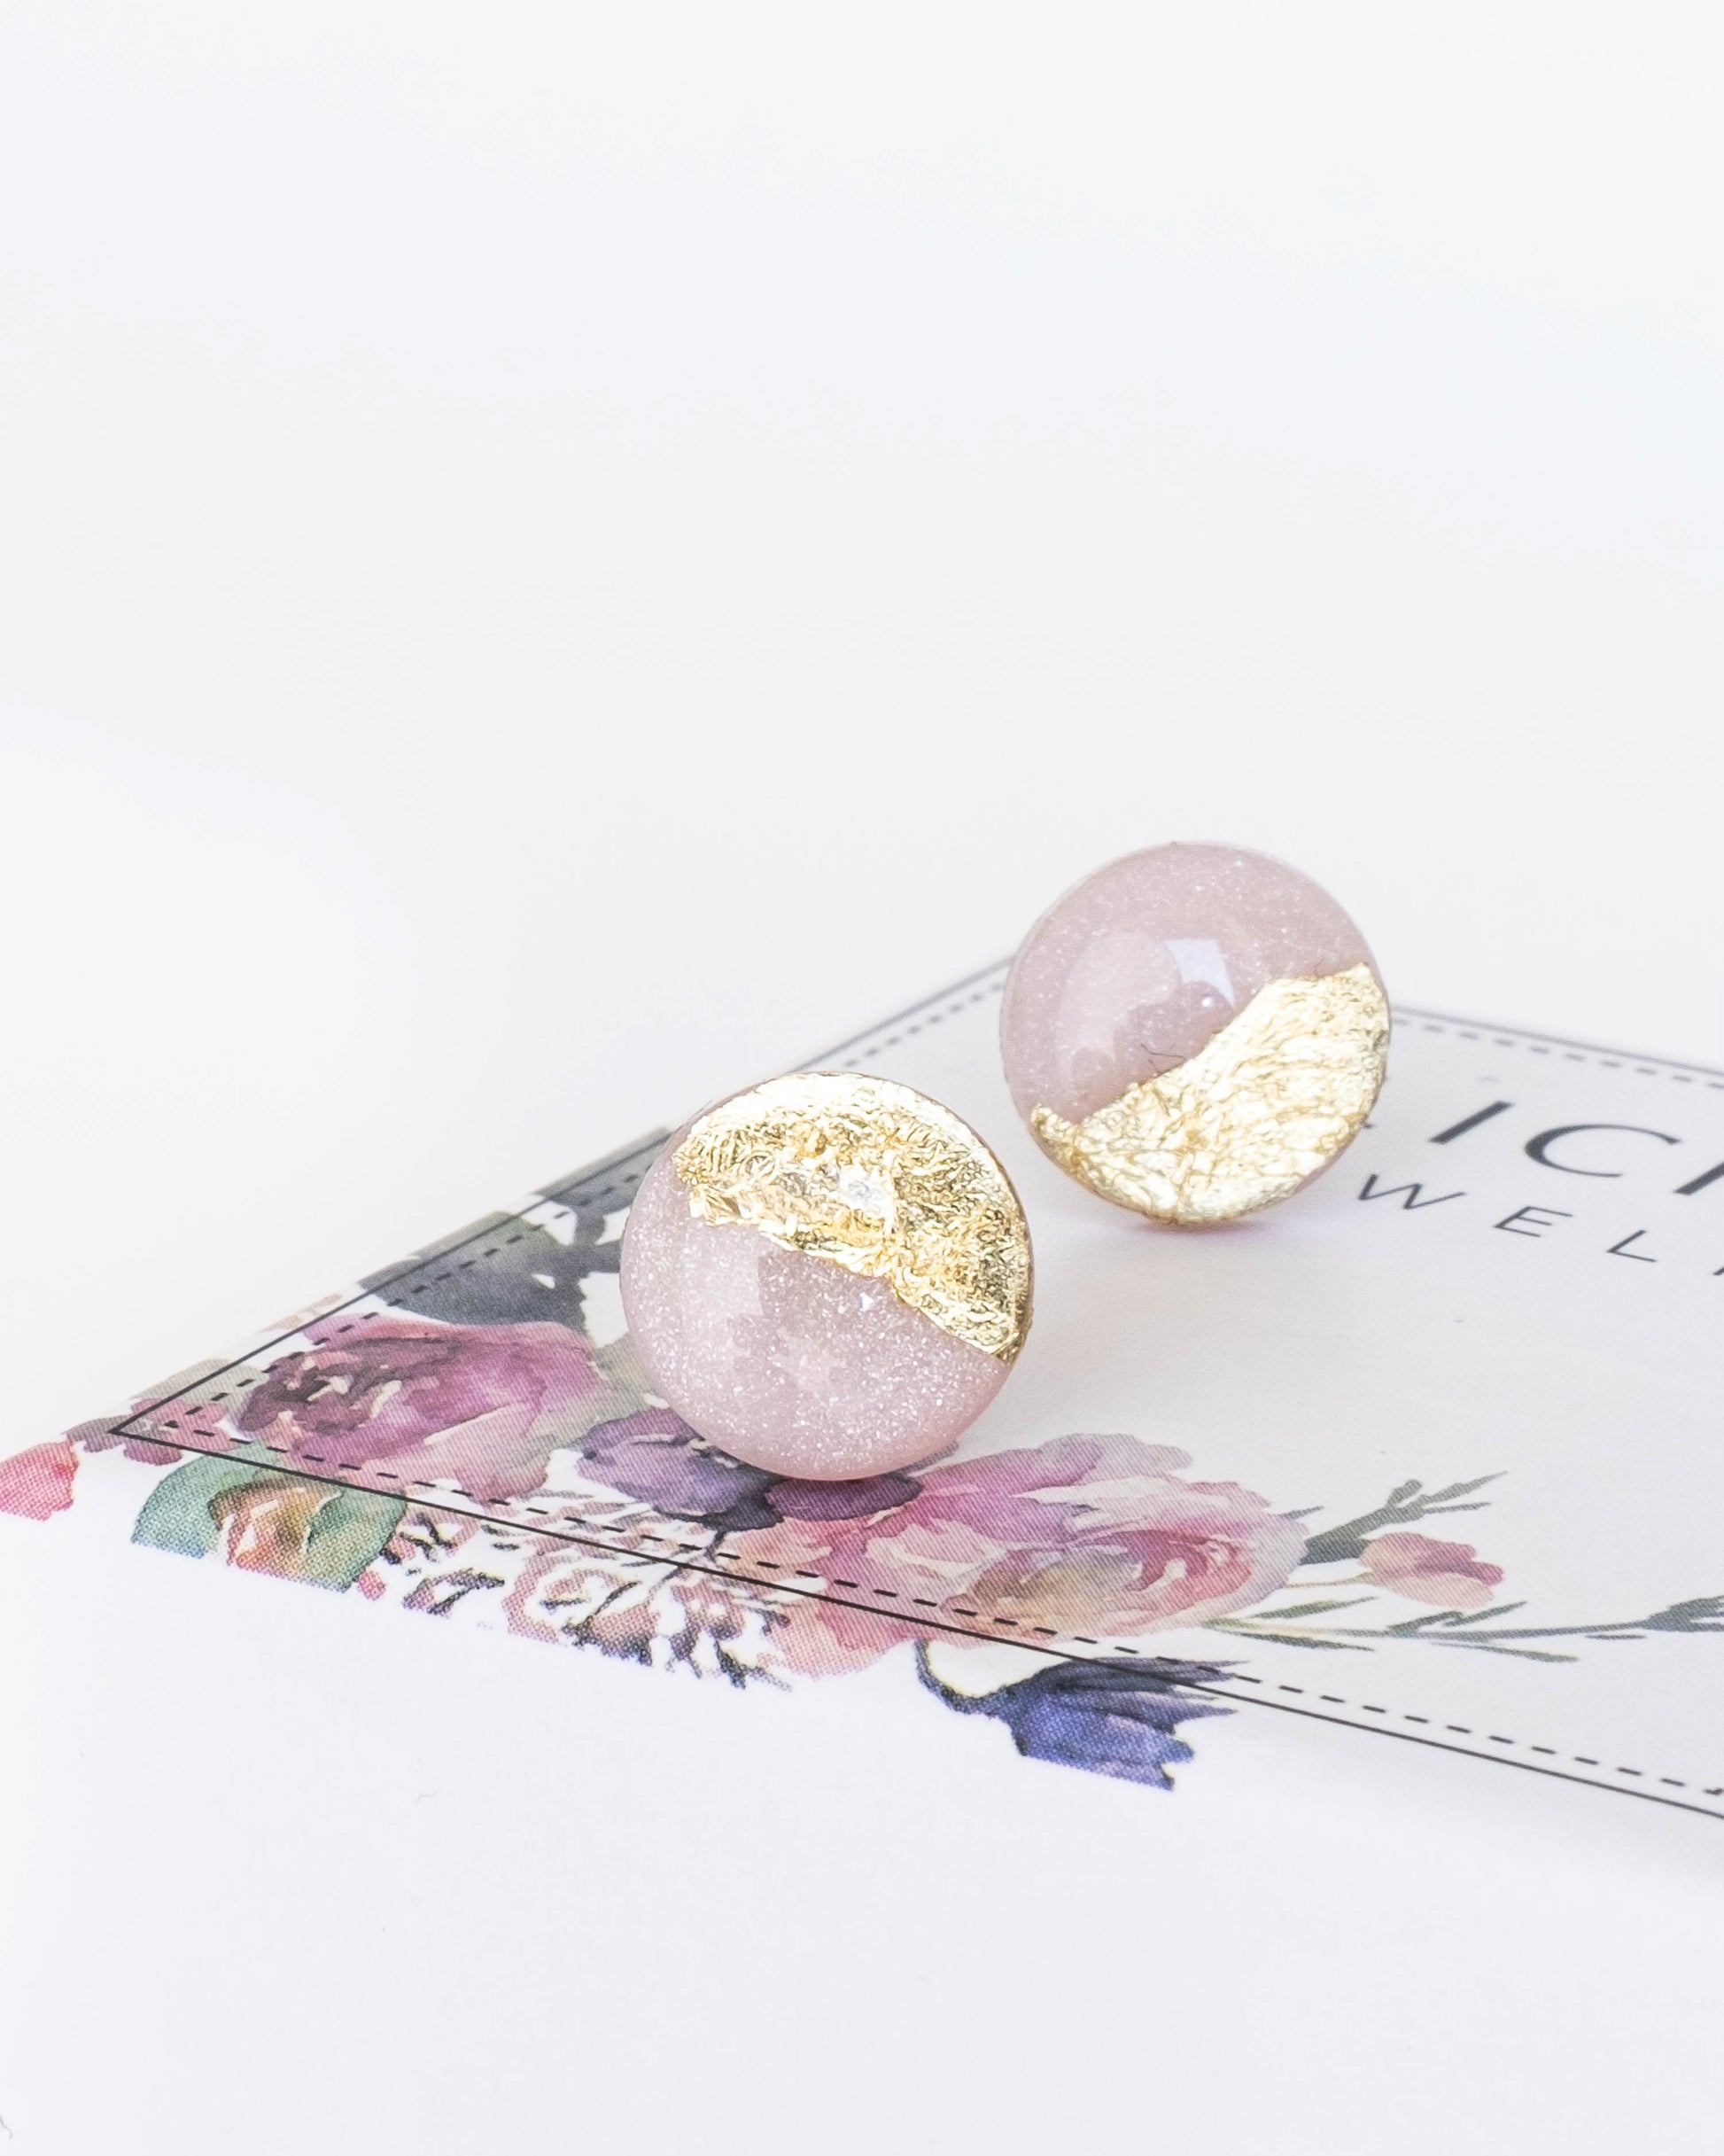 Blush pink stud earrings freeshipping - Ollijewelry